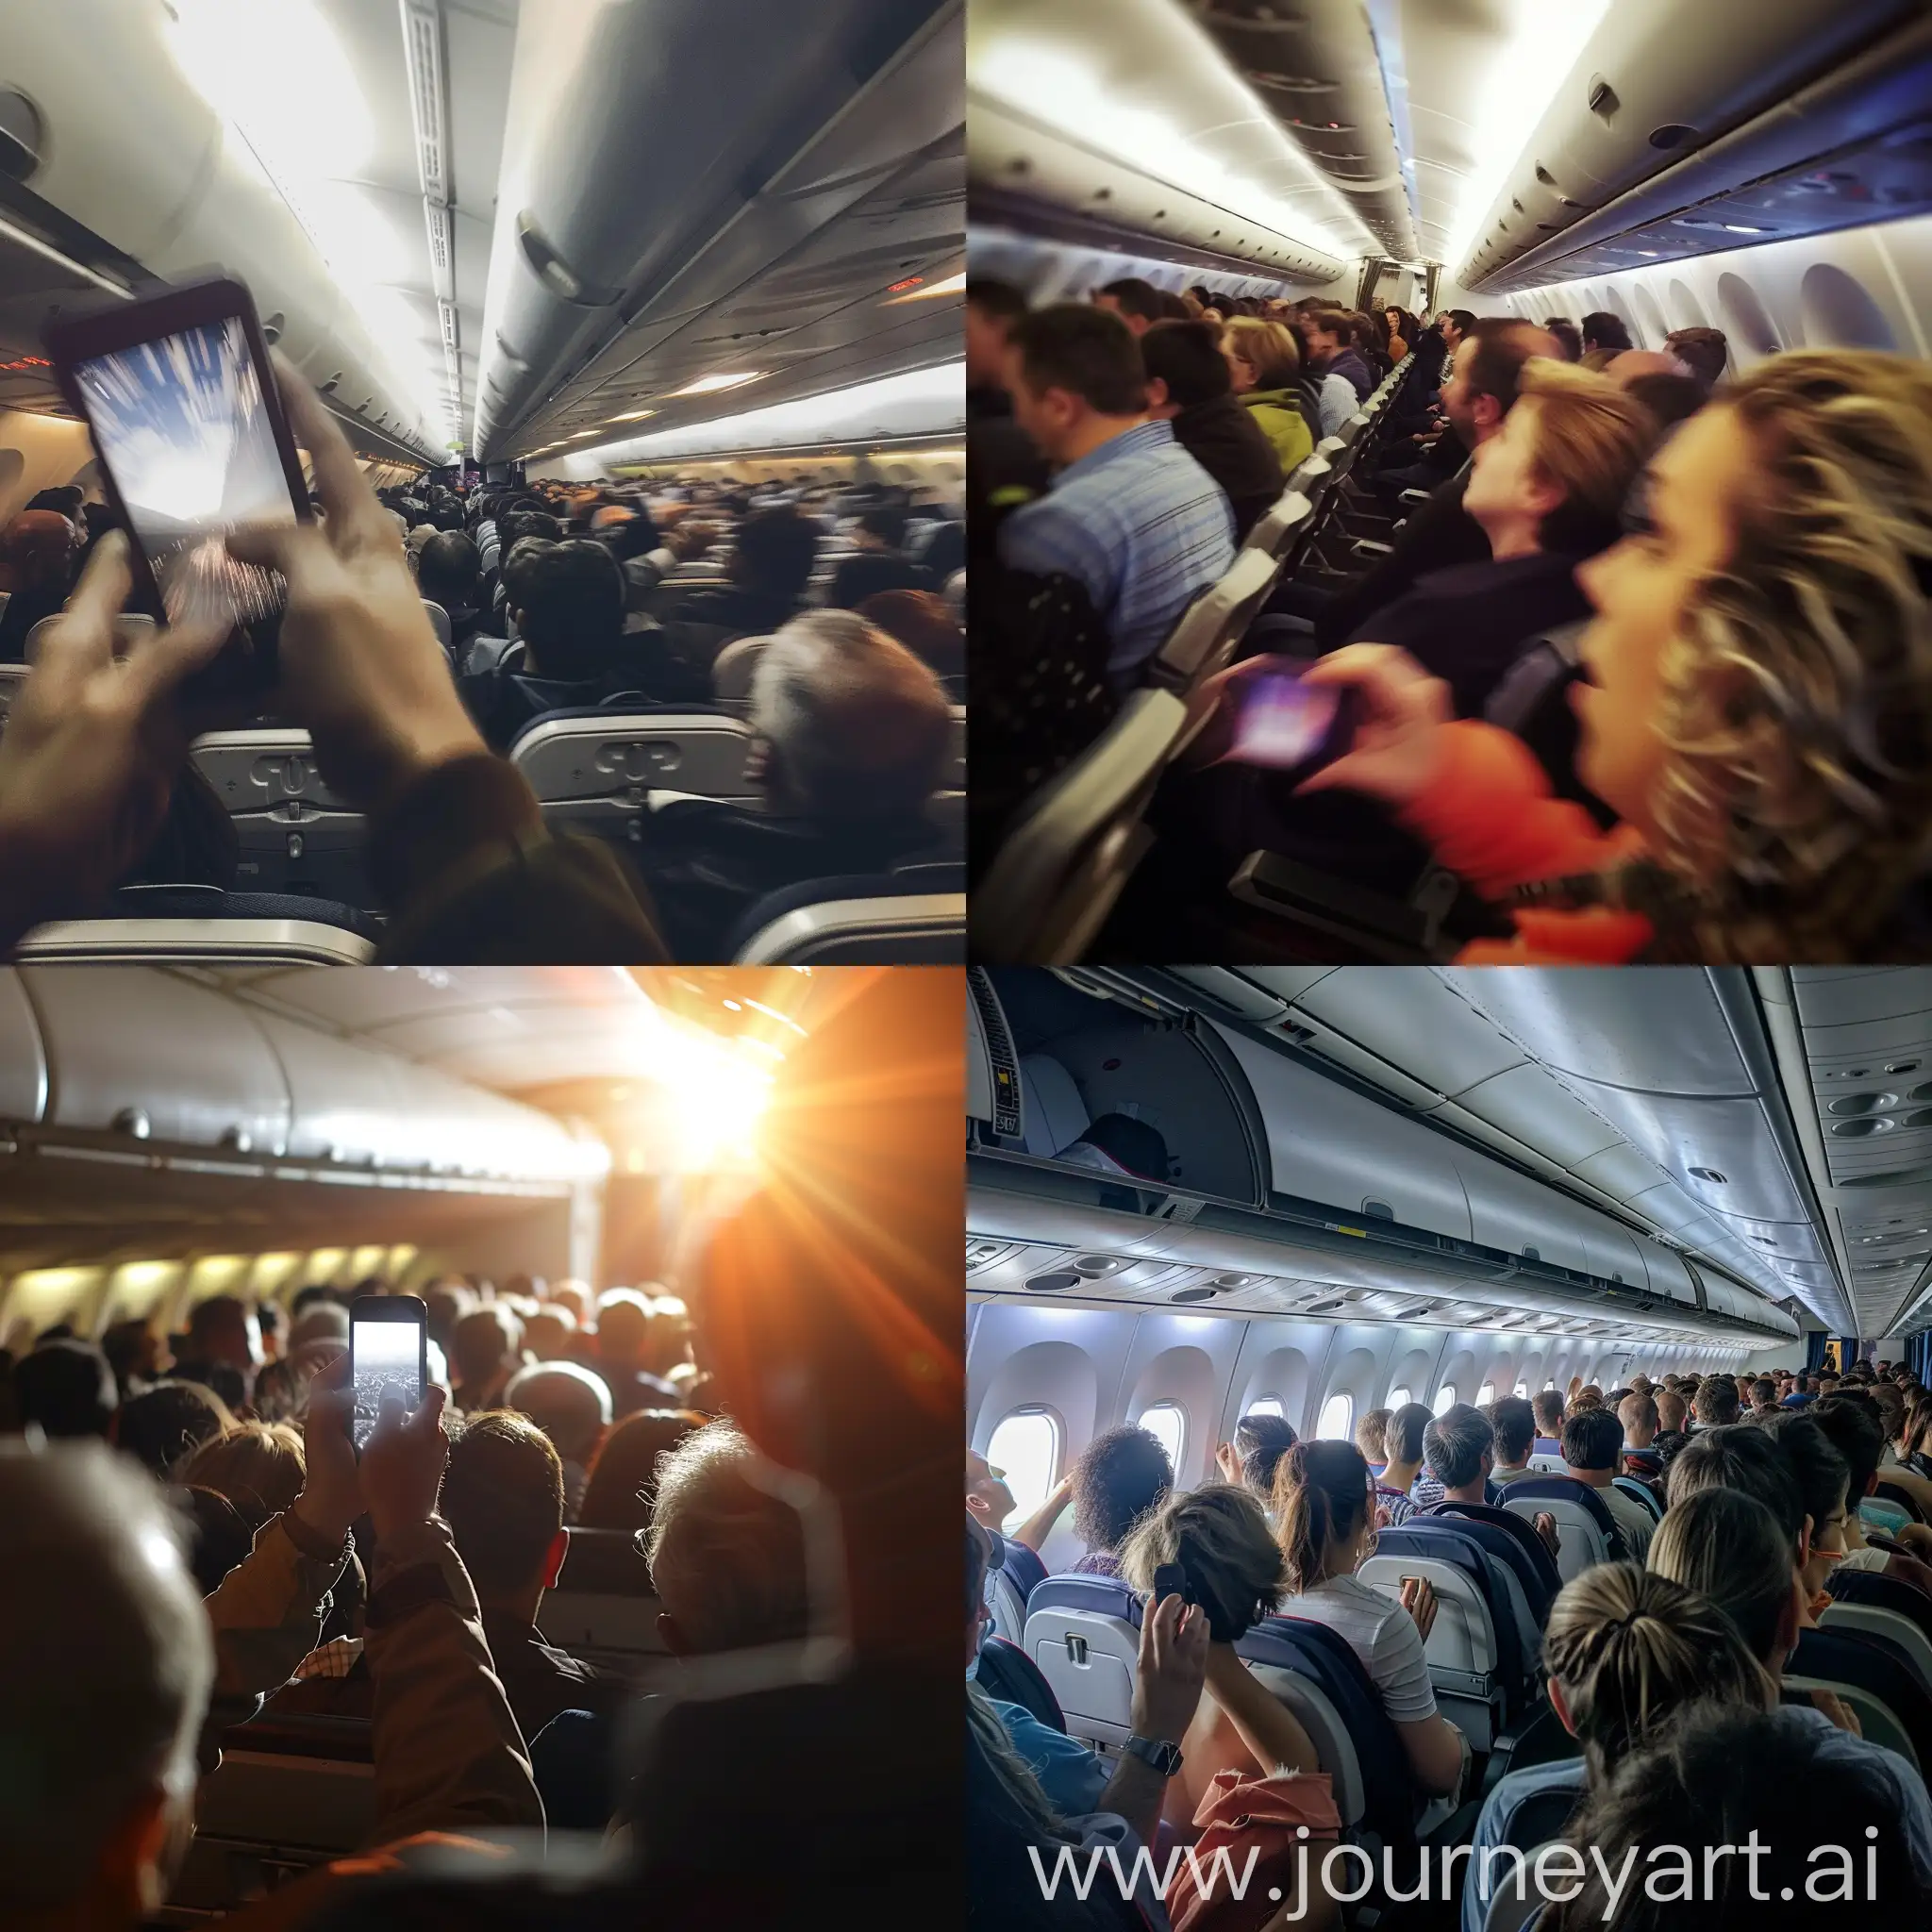 Пасажиры в салоне самолета волнуются из-за экстренной посадки, фотография низкого качества , съемка на мобильный телефон, тряска,
